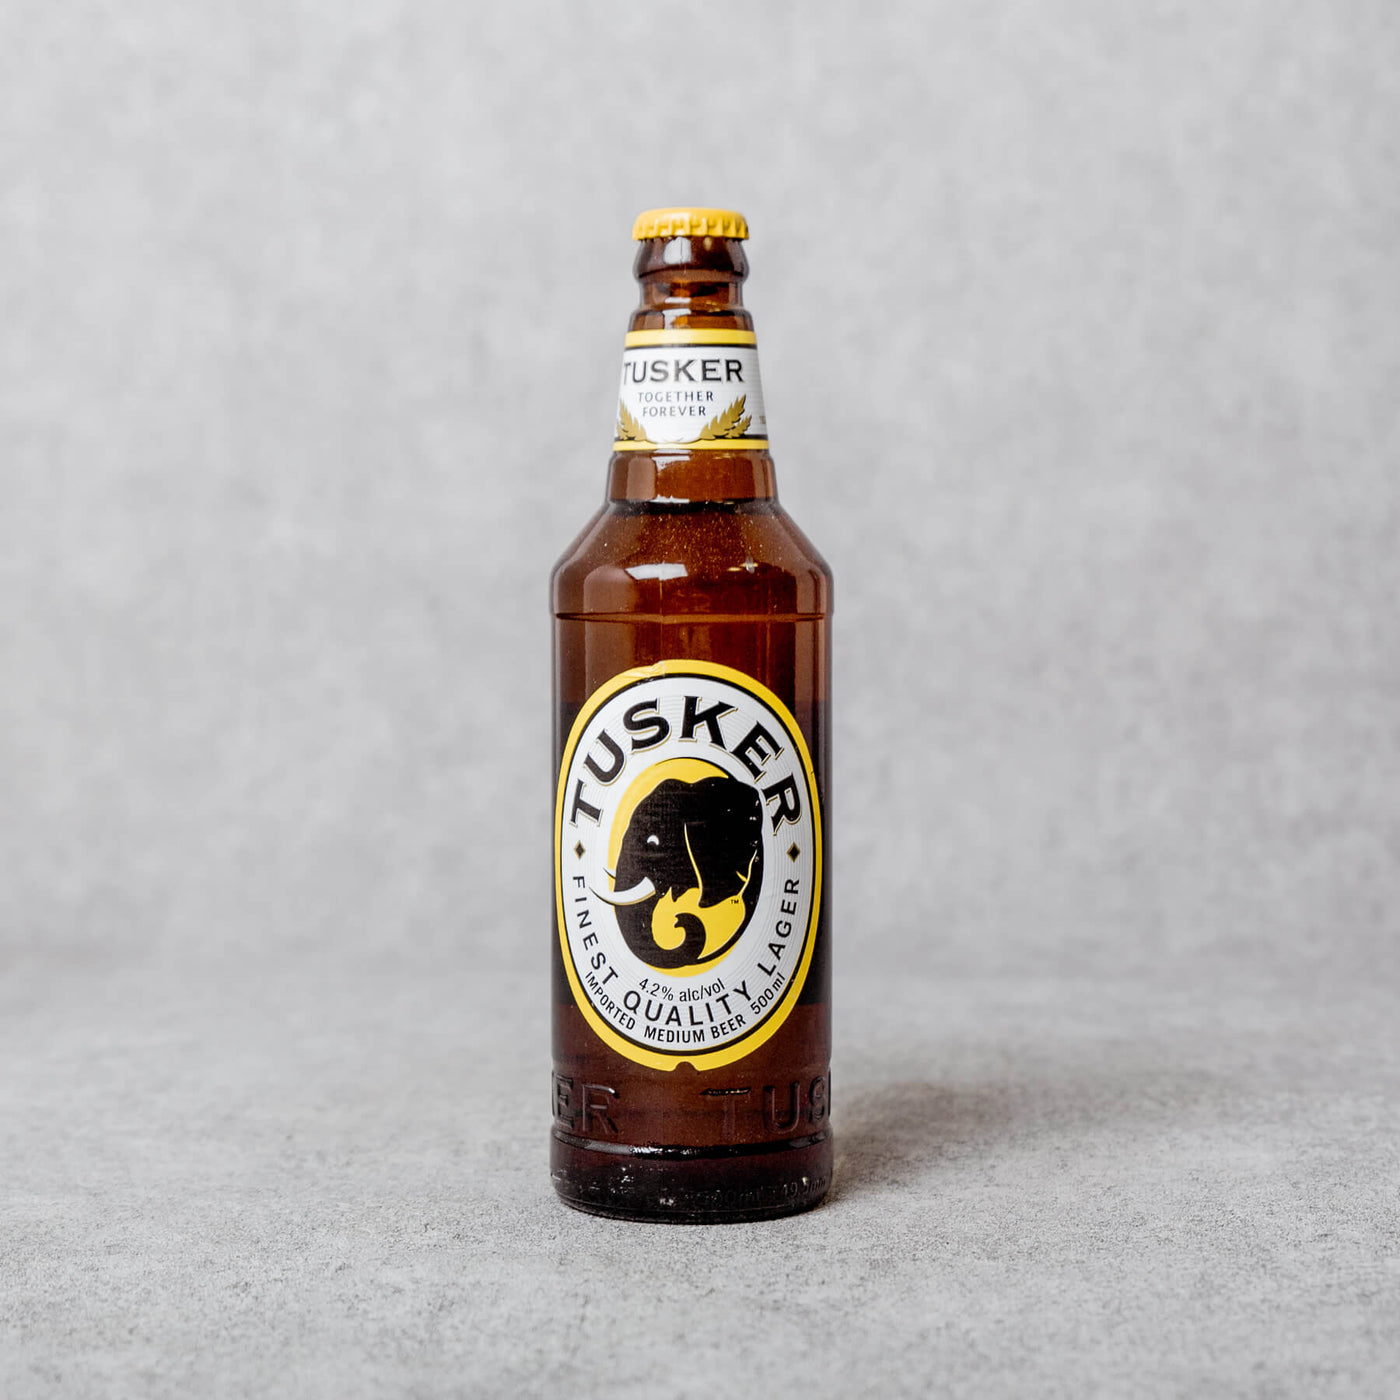 Tusker Beer (Kenia)